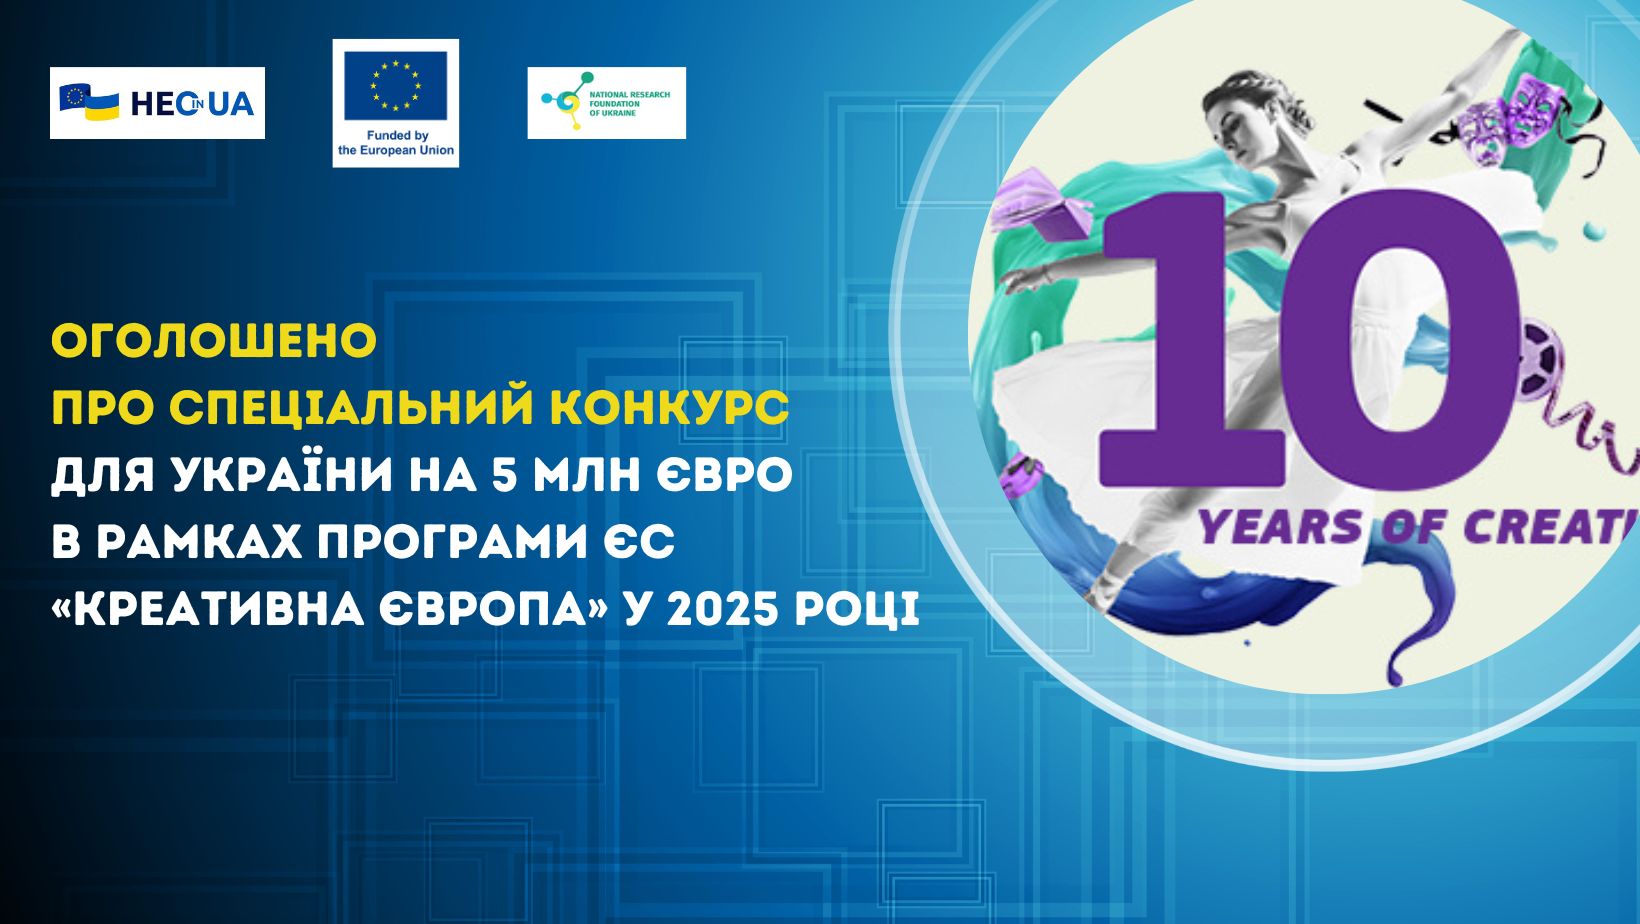 Оголошено про спеціальний конкурс для України на 5 млн євро в рамках Програми ЄС «Креативна Європа» у 2025 році